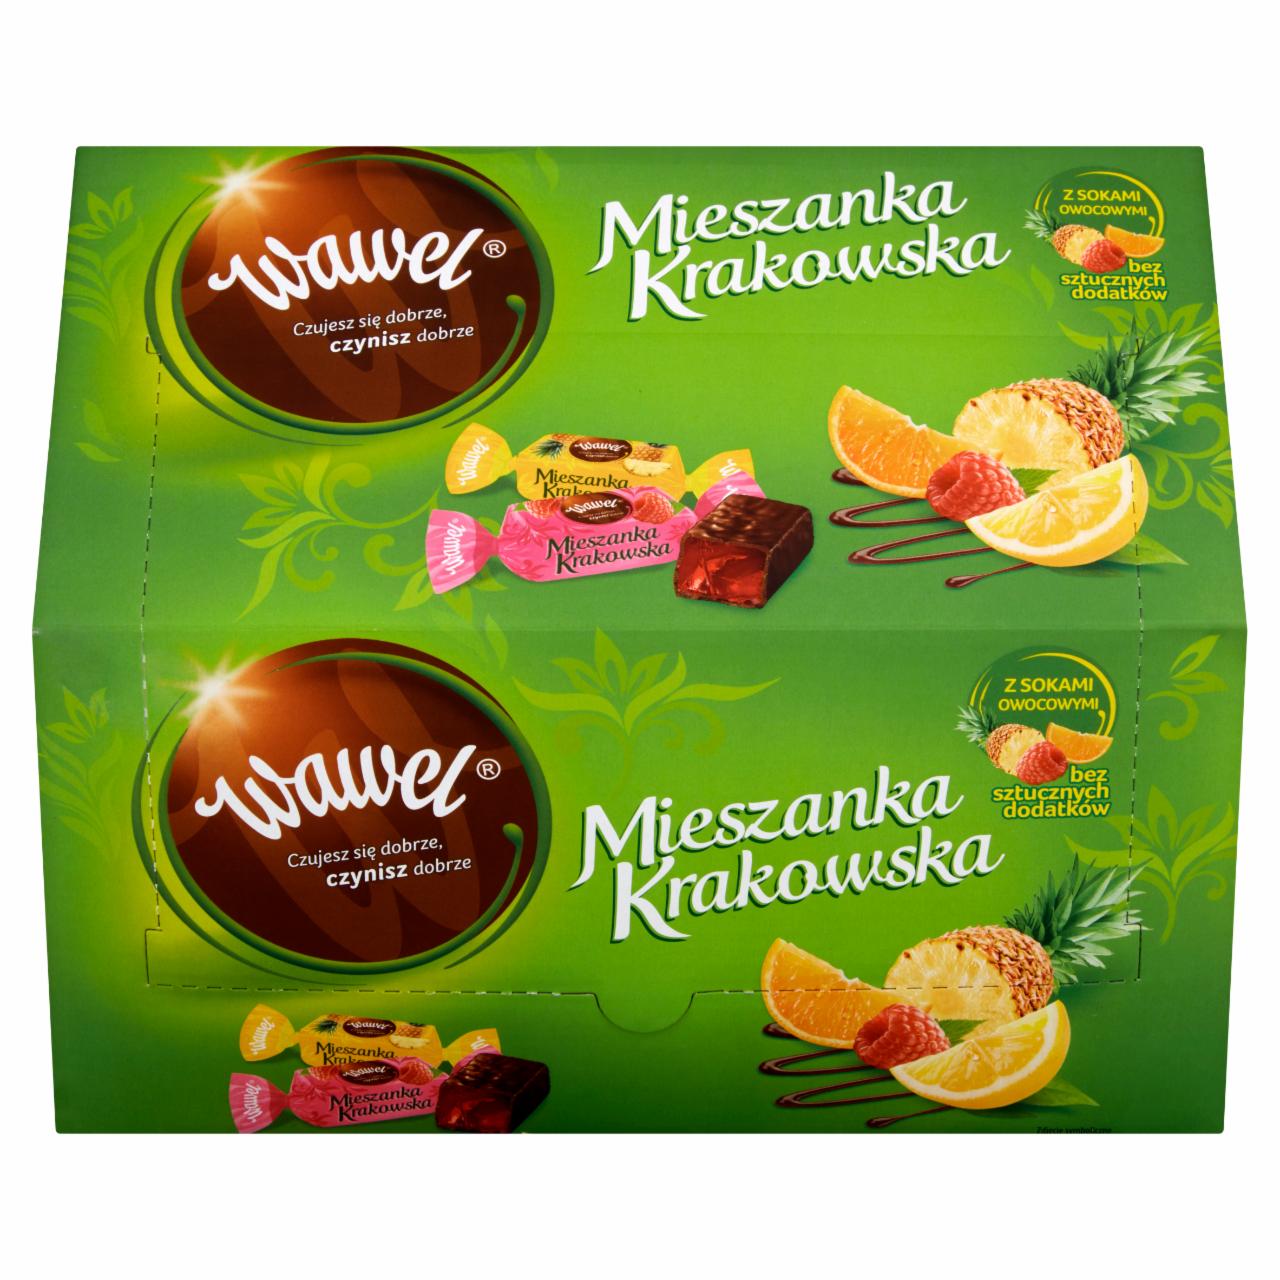 Zdjęcia - Wawel Mieszanka Krakowska Galaretki w czekoladzie 2,8 kg